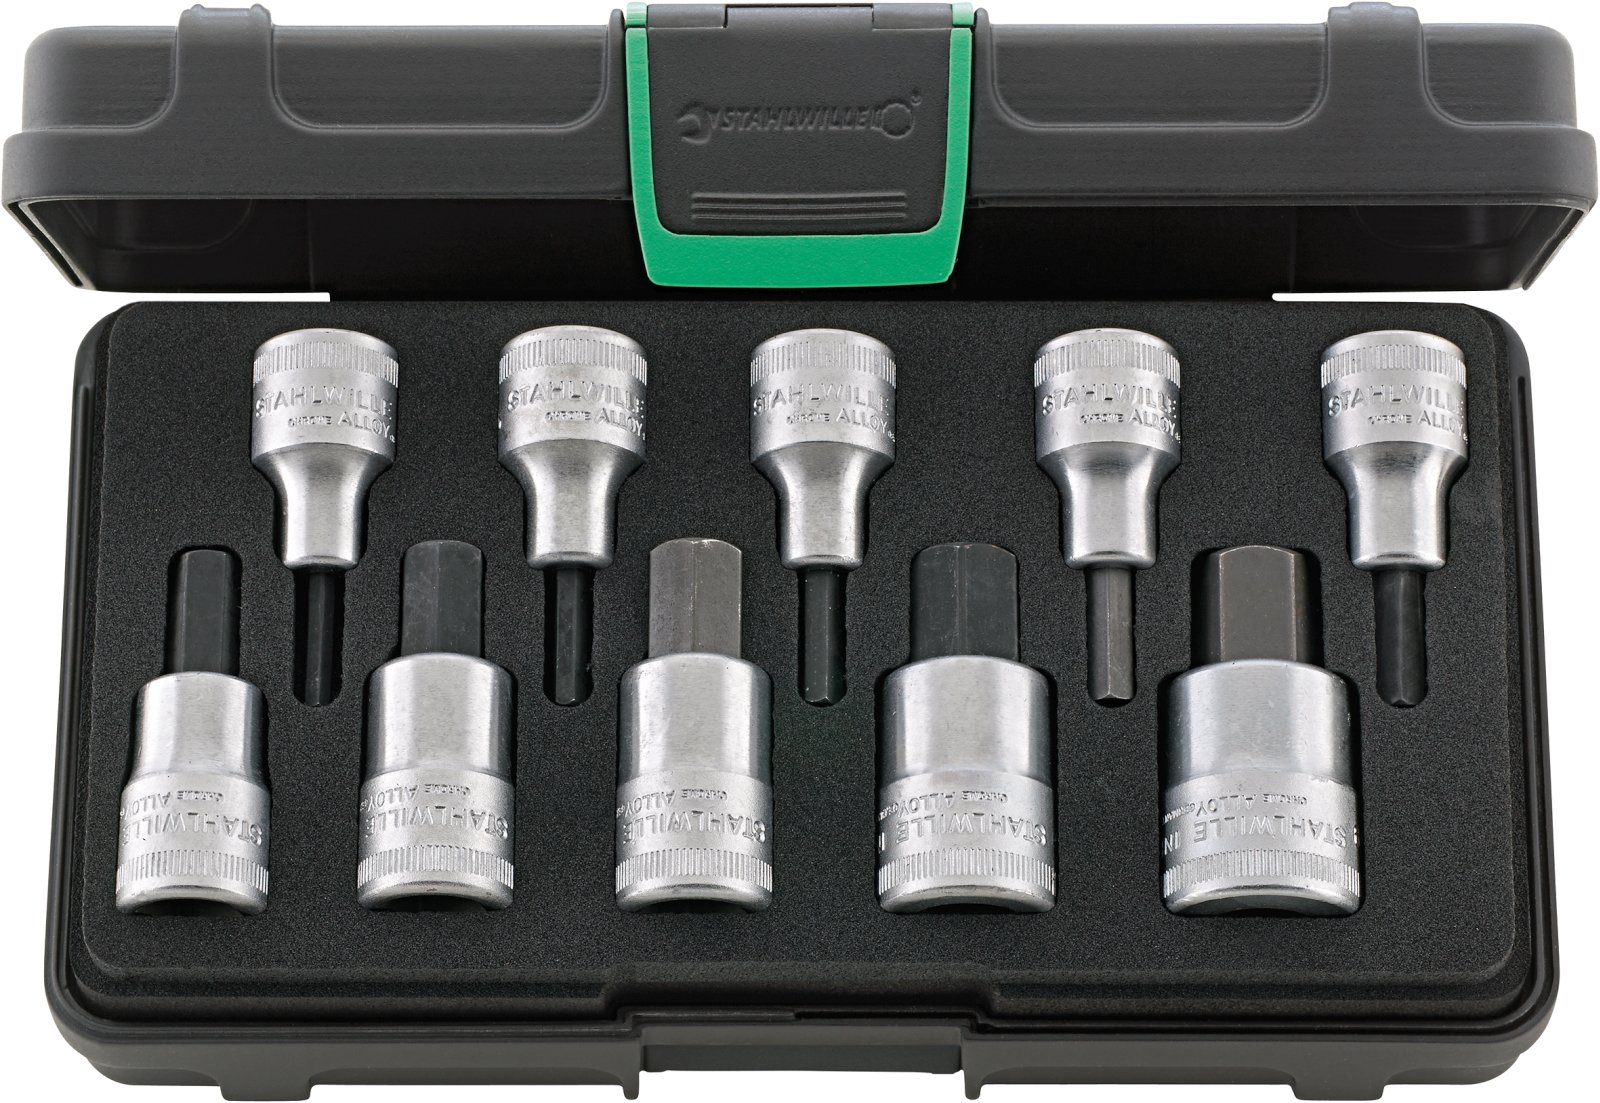 Zestaw narzędzi 1/2" INHEX 4-19 mm; 10-elementowy w walizce ABS STAHLWILLE